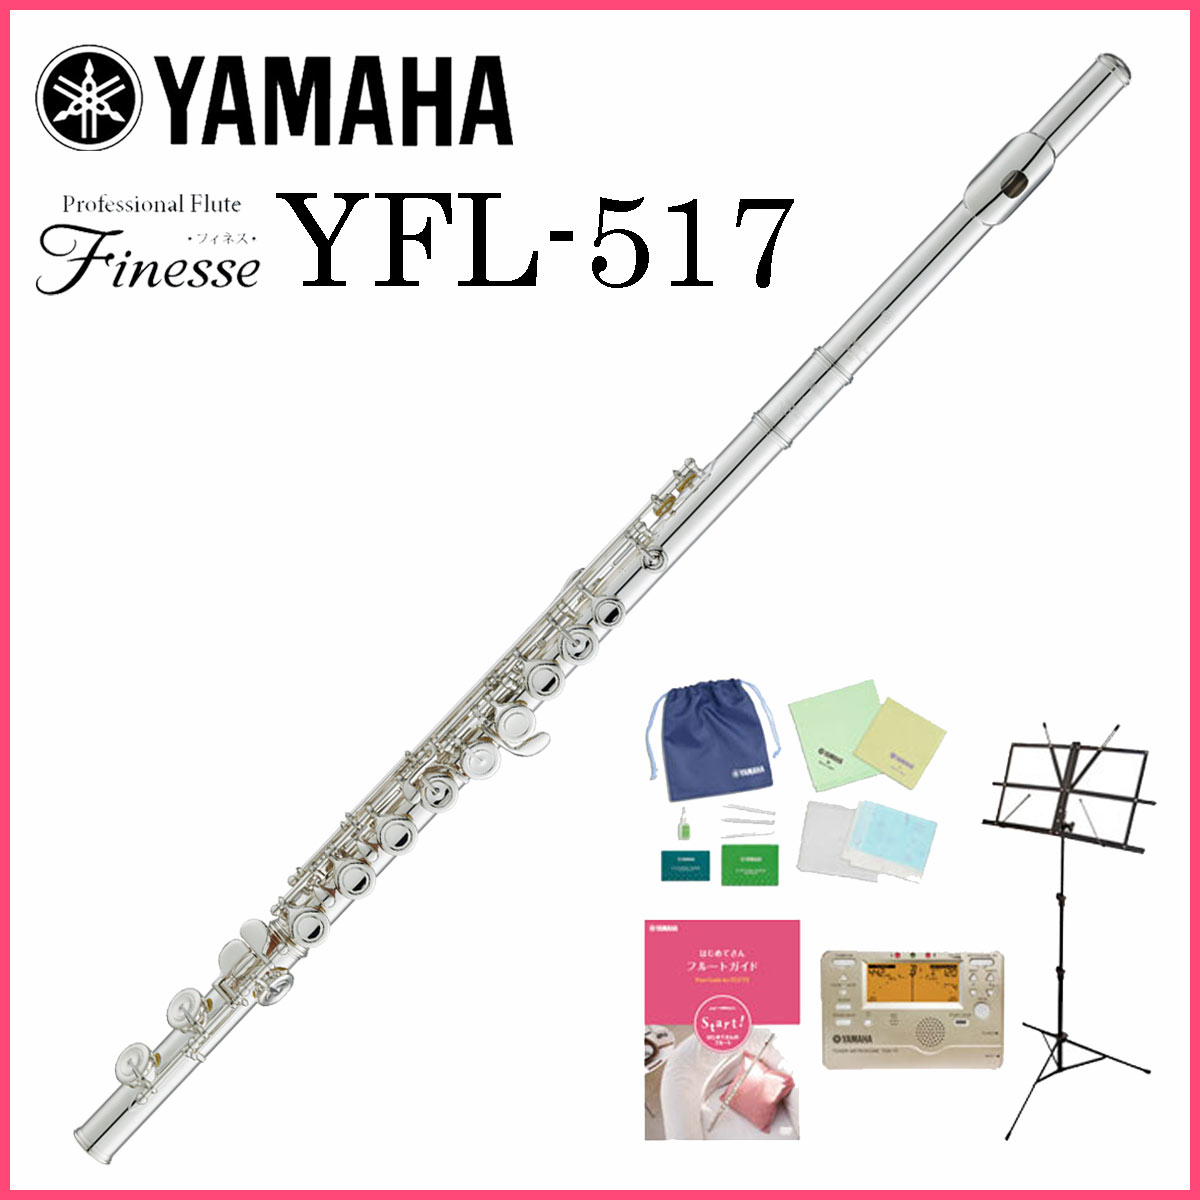 YAMAHA FLUTE YFL-517 「Finesse」ヤマハ プロフェッショナル フルート